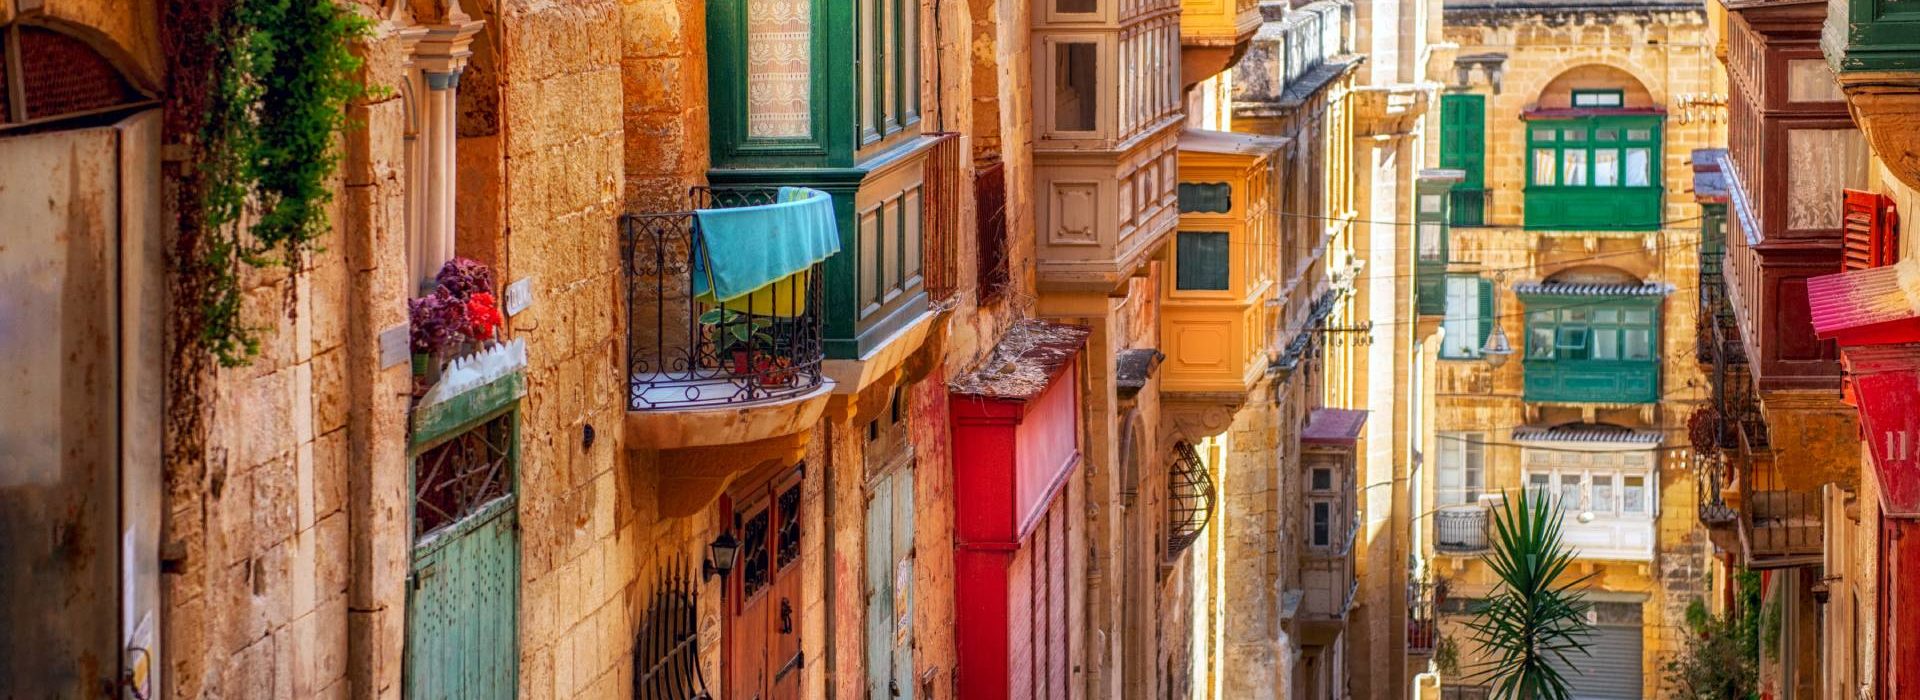 Street in Valletta town